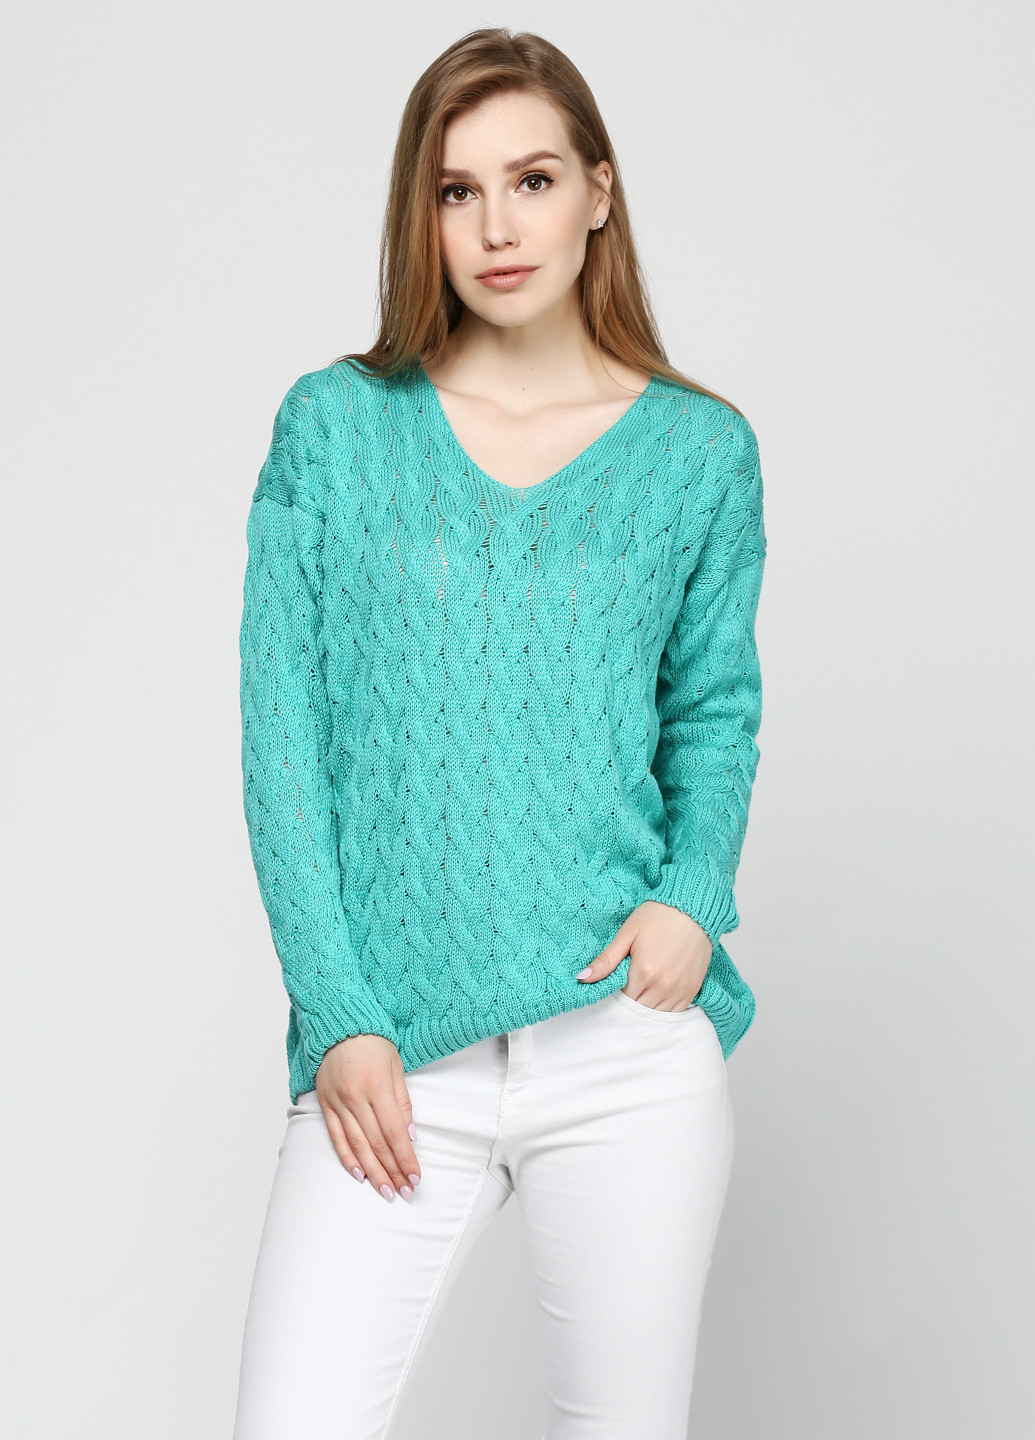 Зеленый демисезонный пуловер пуловер Zaldiz